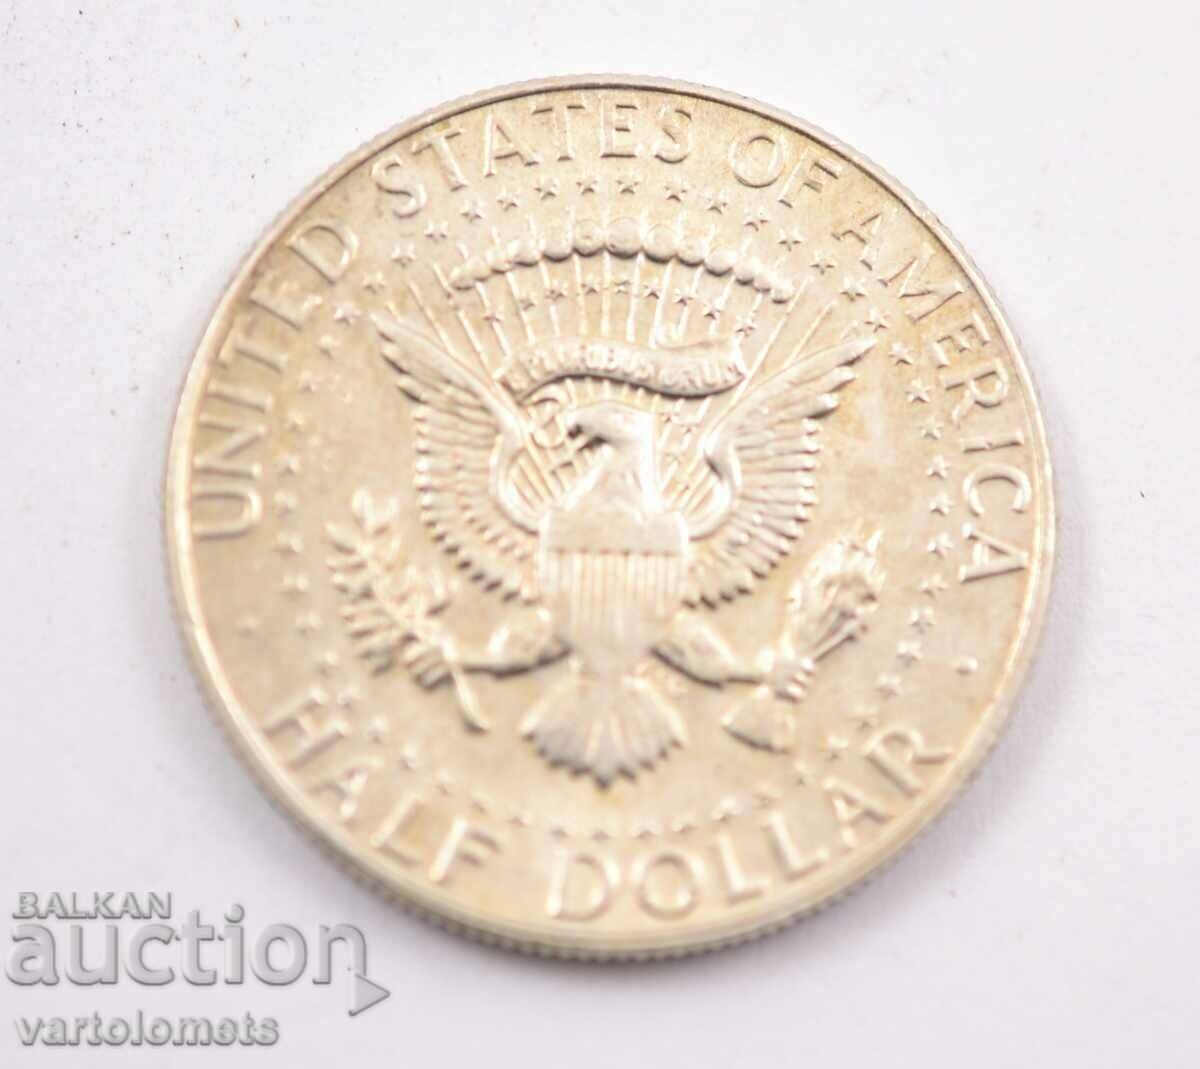 ½ dollar 1967 - USA Kennedy Half dollar 11.5 g silver